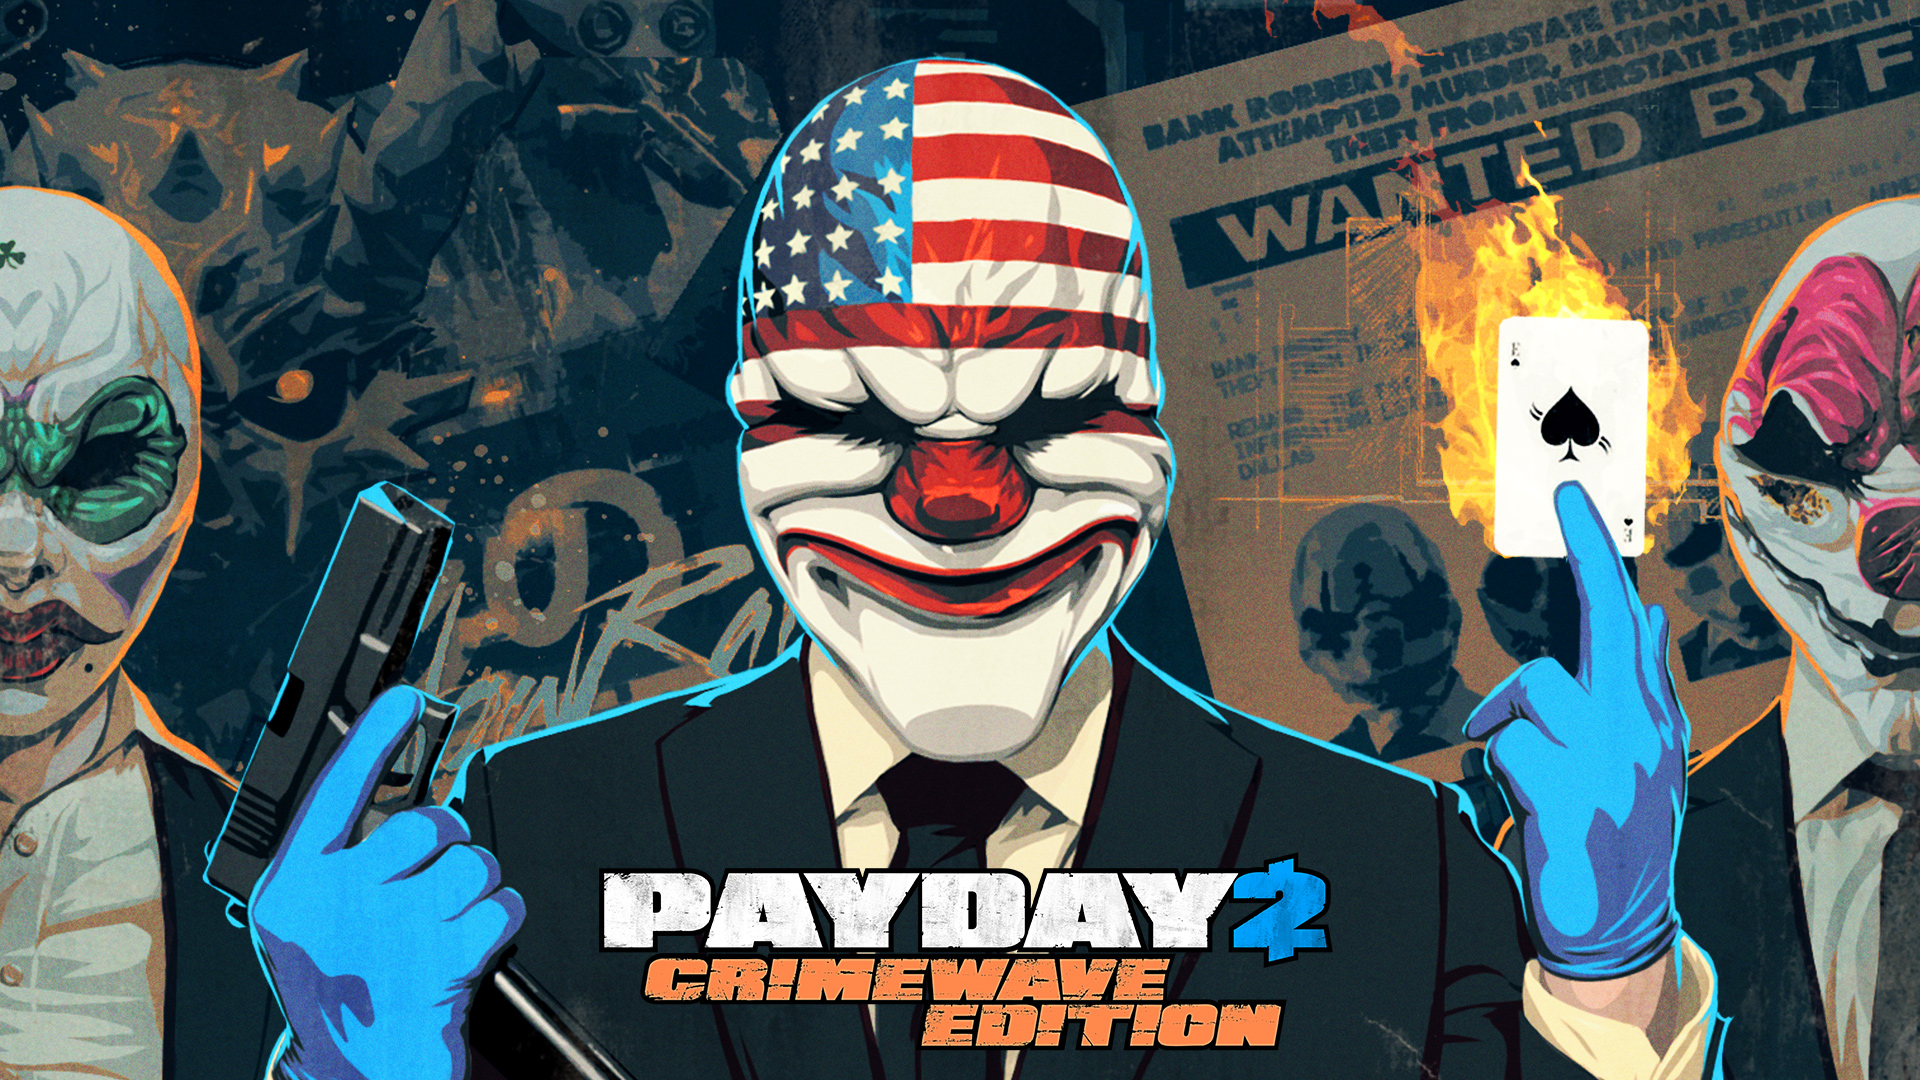 E’ disponibile da oggi Payday Crimewave Edition: ecco il trailer di lancio